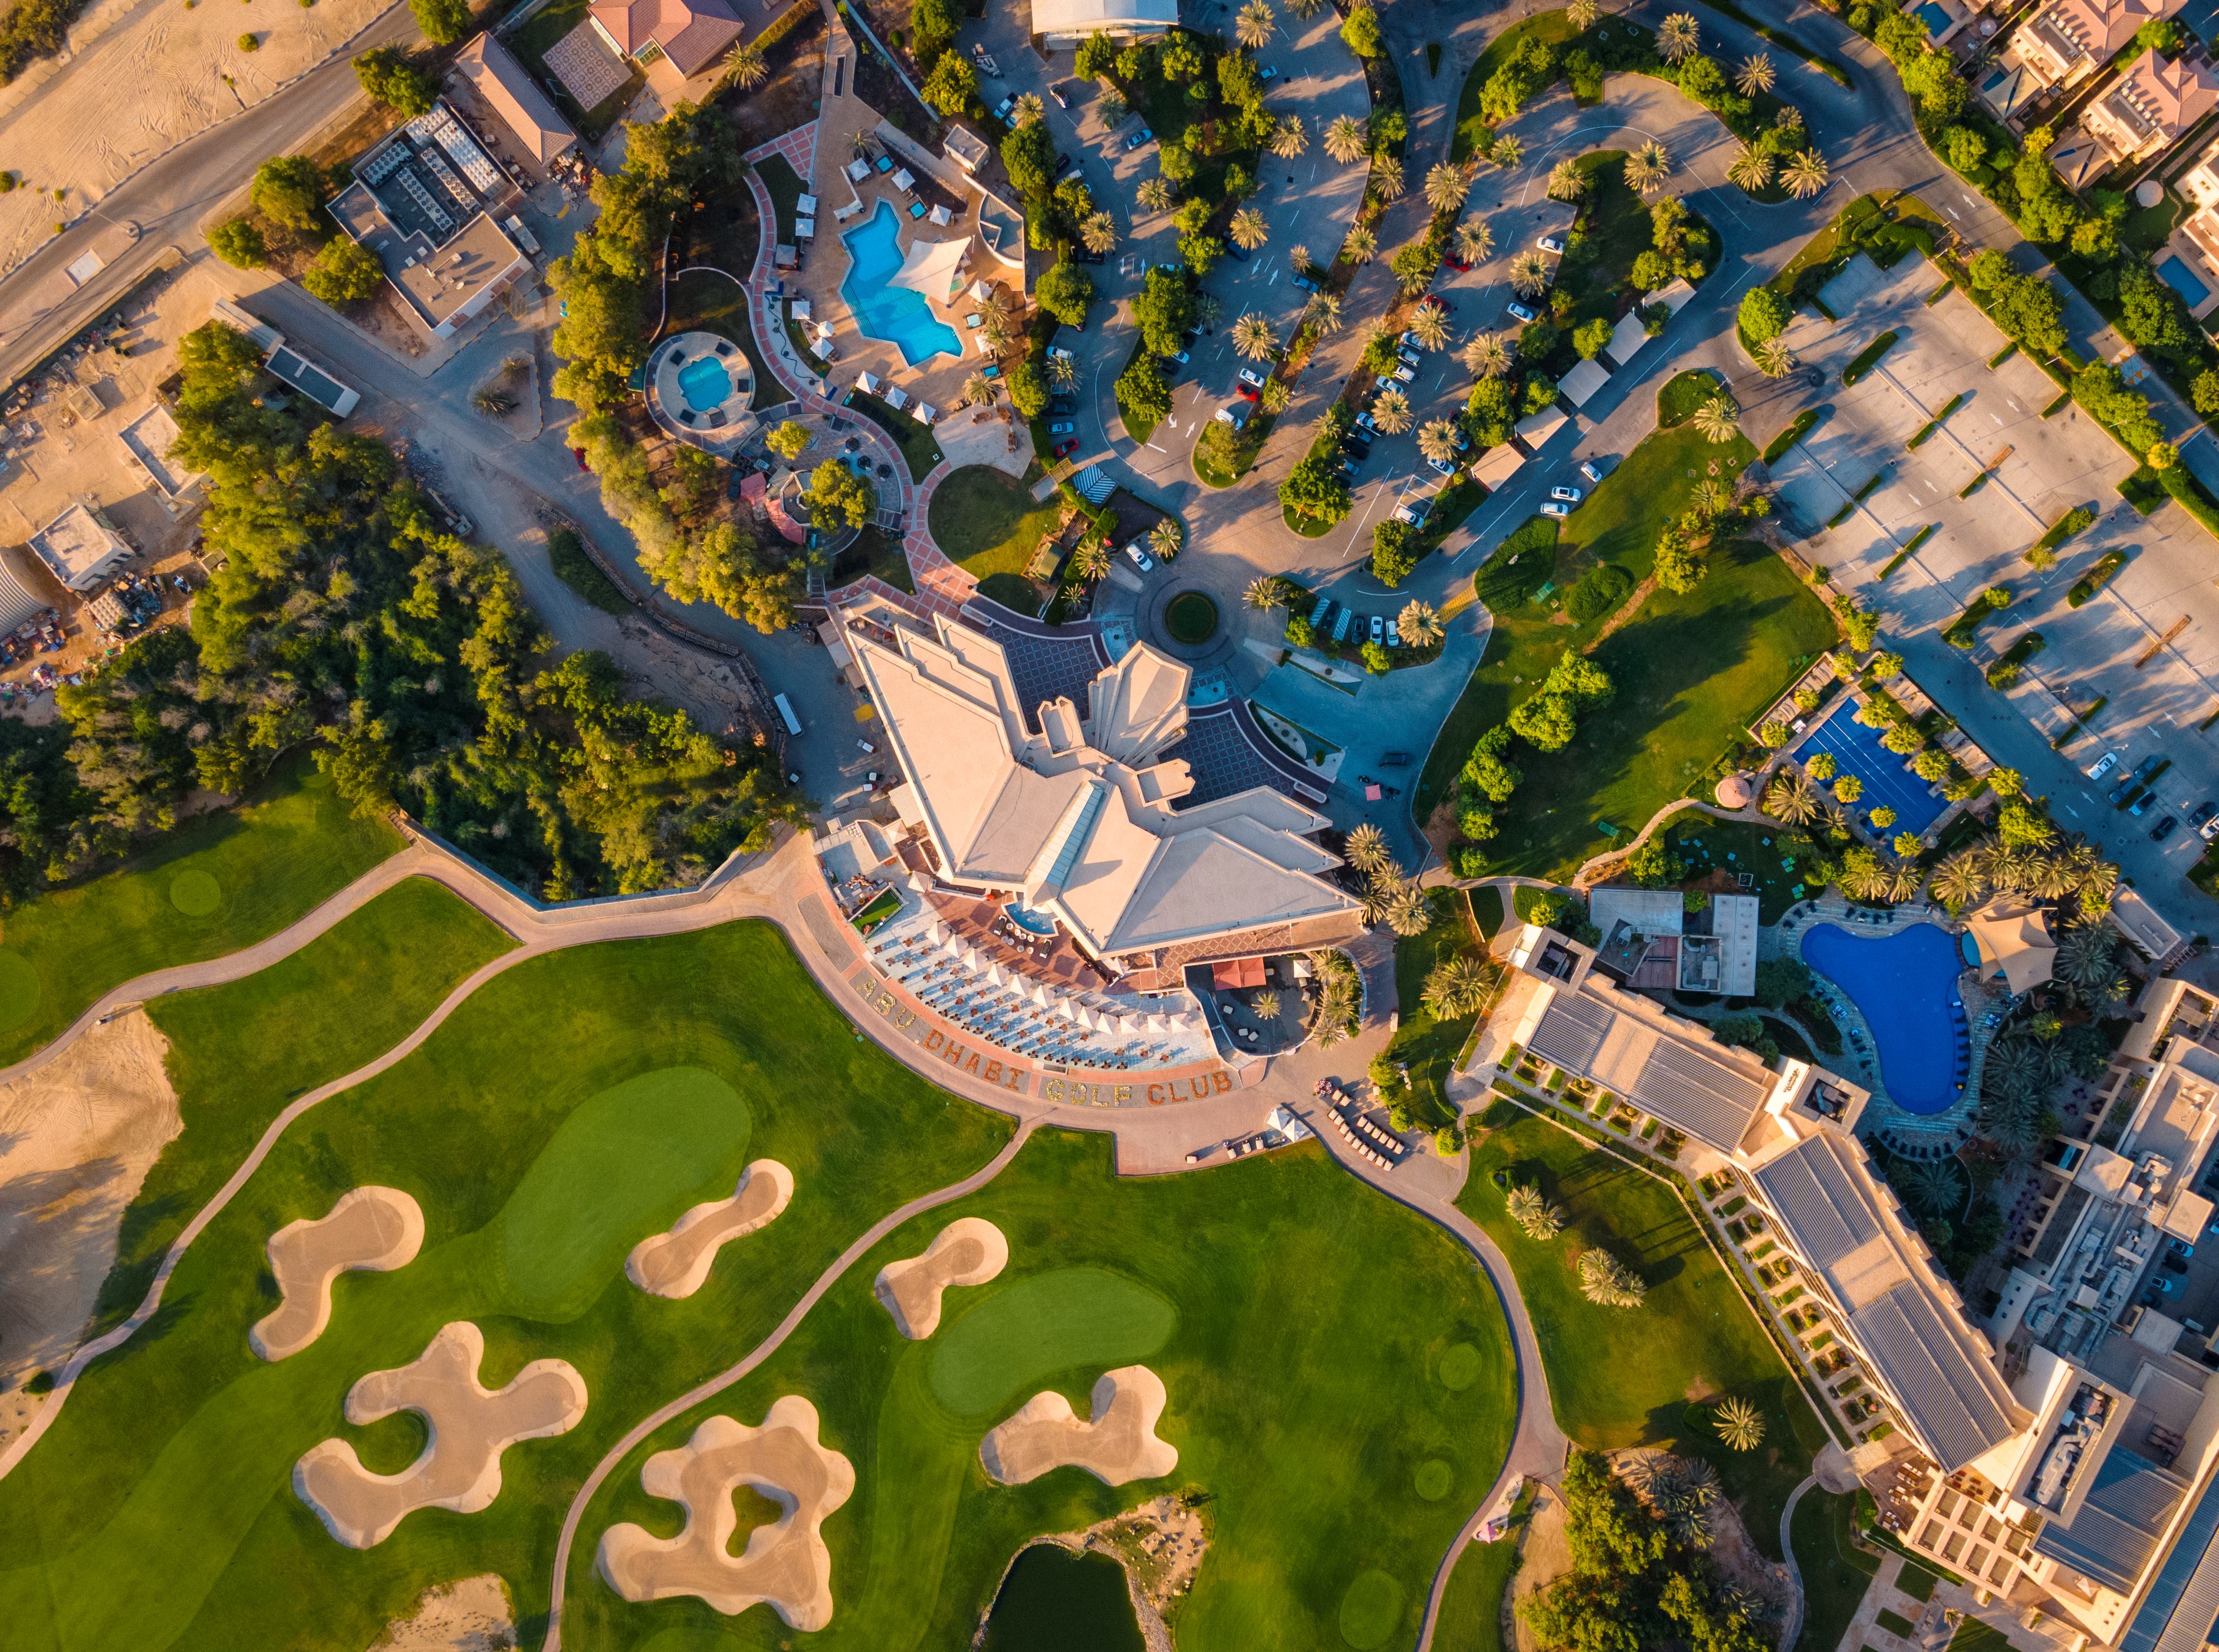 Abu dhabi golf club aerial 2022